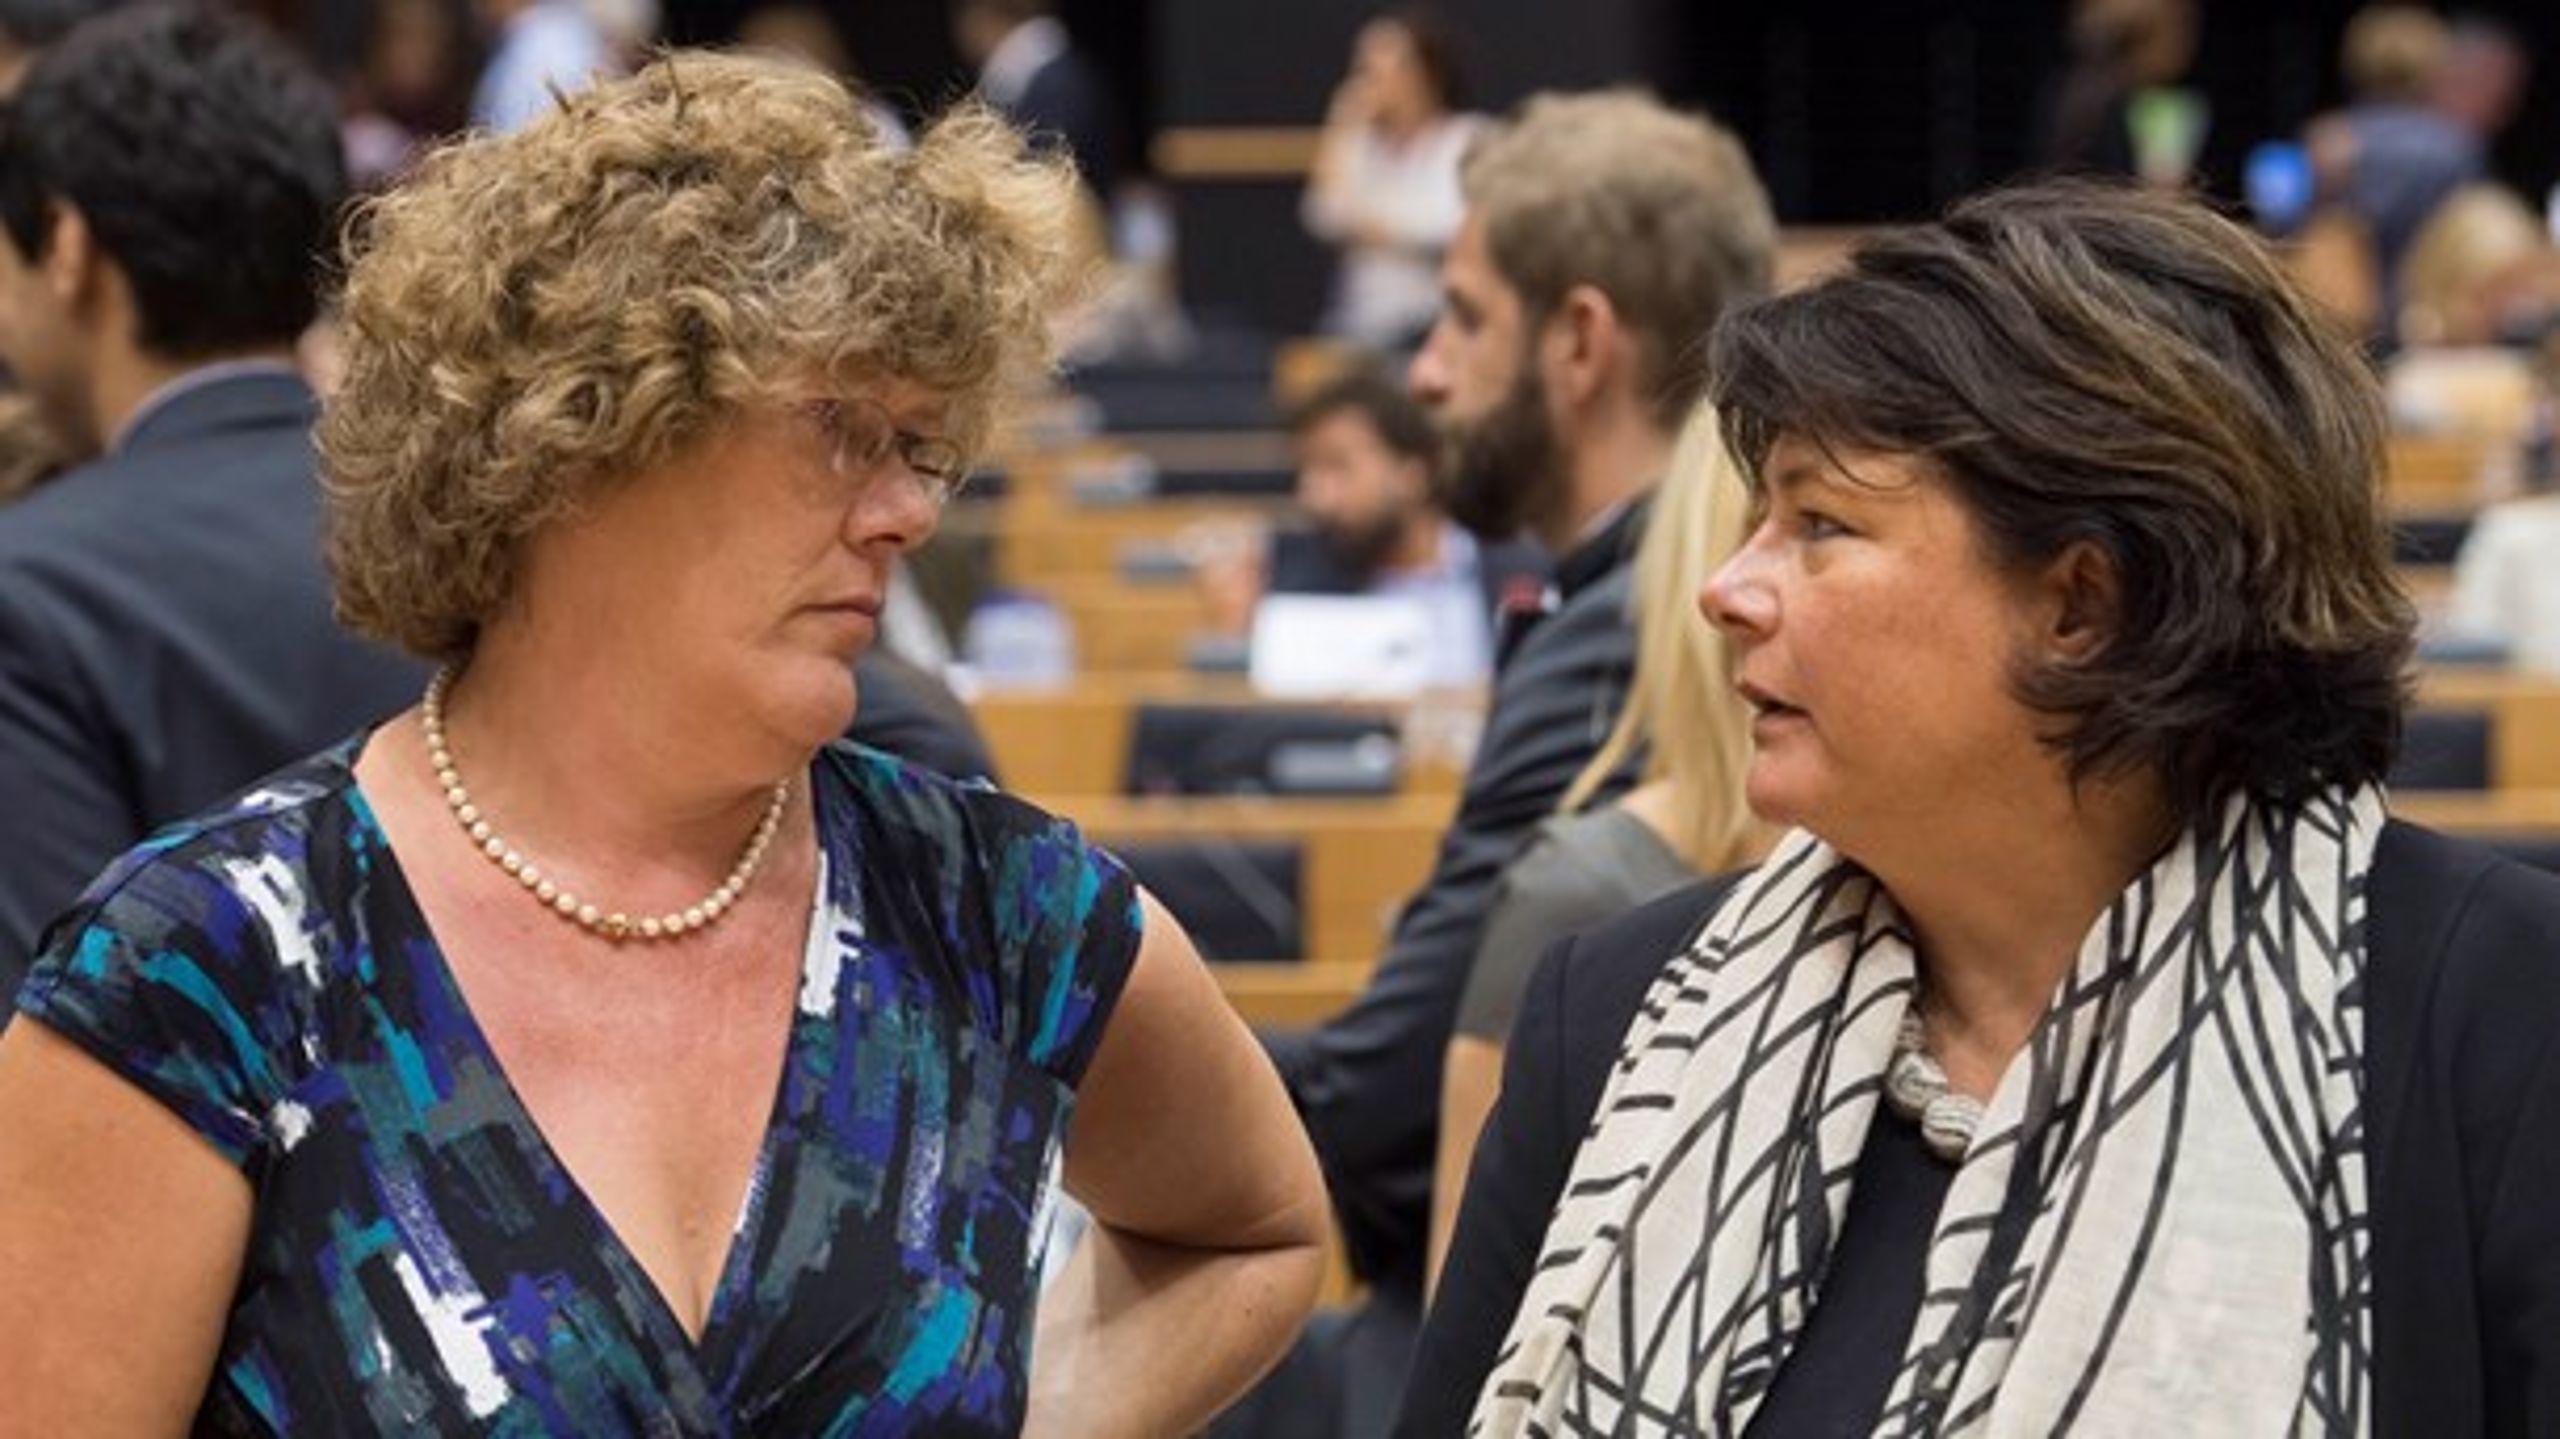 <div>Petra&nbsp;Kammerevert&nbsp;och Sabine Verheyen har nyckelroller i parlamentet om EU-kvot på streamingtjänster. De vill höja kommissionens förslag om 20 procent europeiskt innehåll till 30 procent. Andra i parlamentet vill ha en så hög kvot som 50 procent.&nbsp;</div>